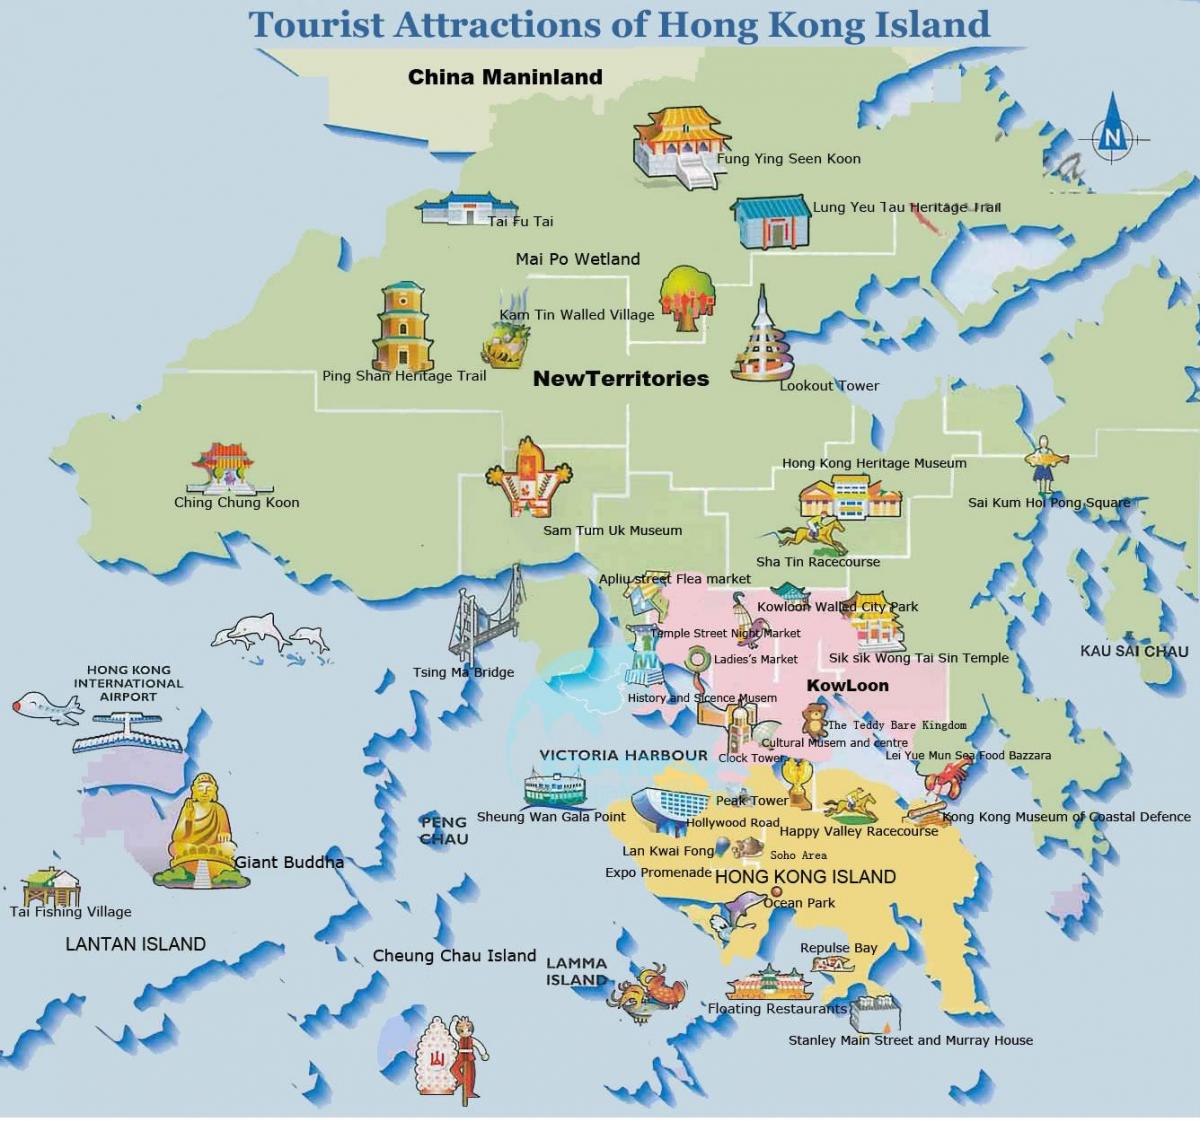 piko Honkongo žemėlapyje